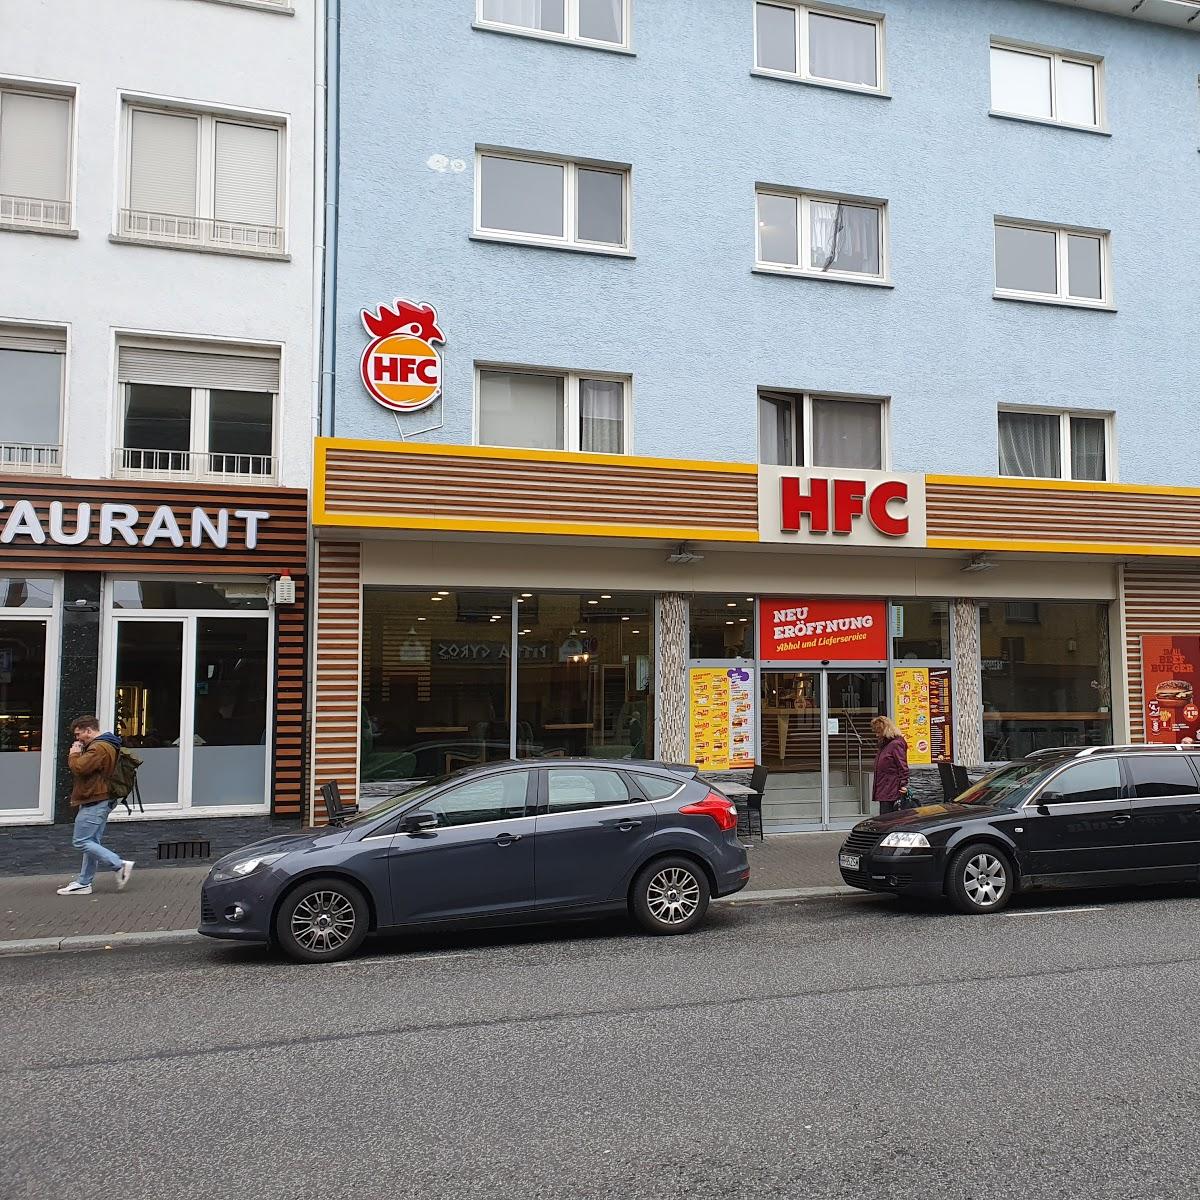 Restaurant "HFC - Halal Fried Chicken" in Gießen